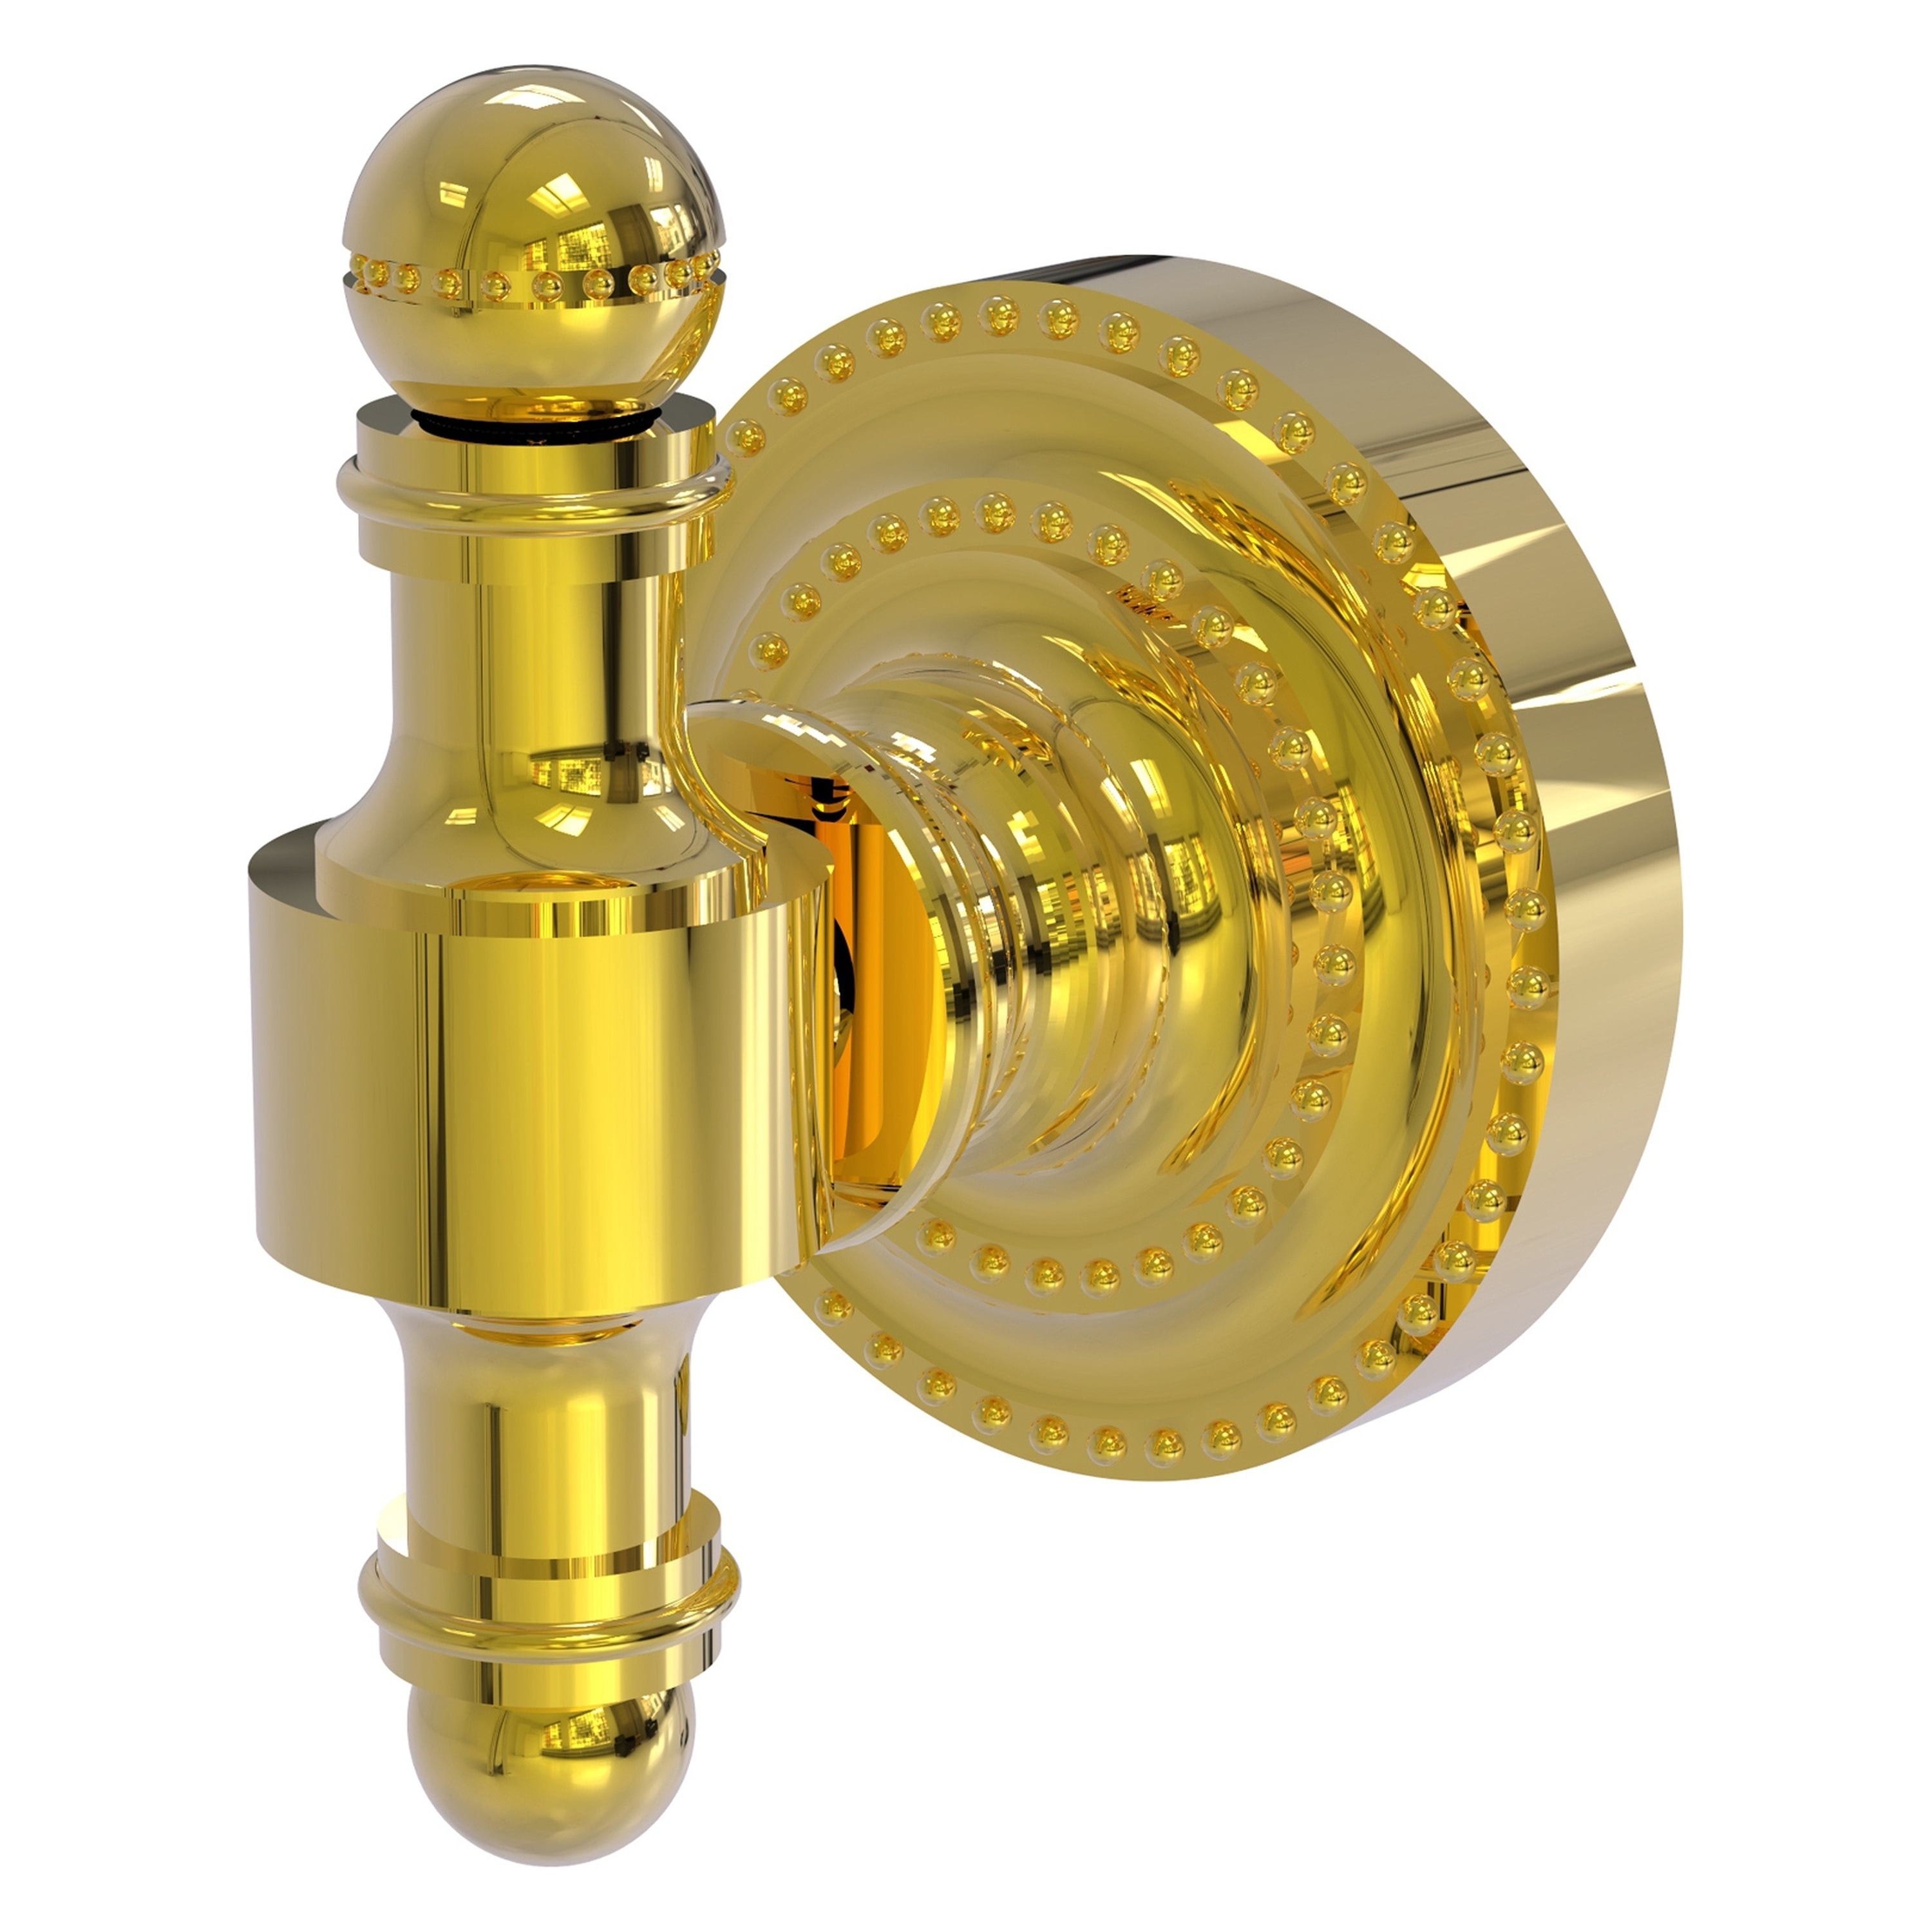 Allied Brass Satellite Orbit One 7 x 2.6 Unlacquered Brass Solid